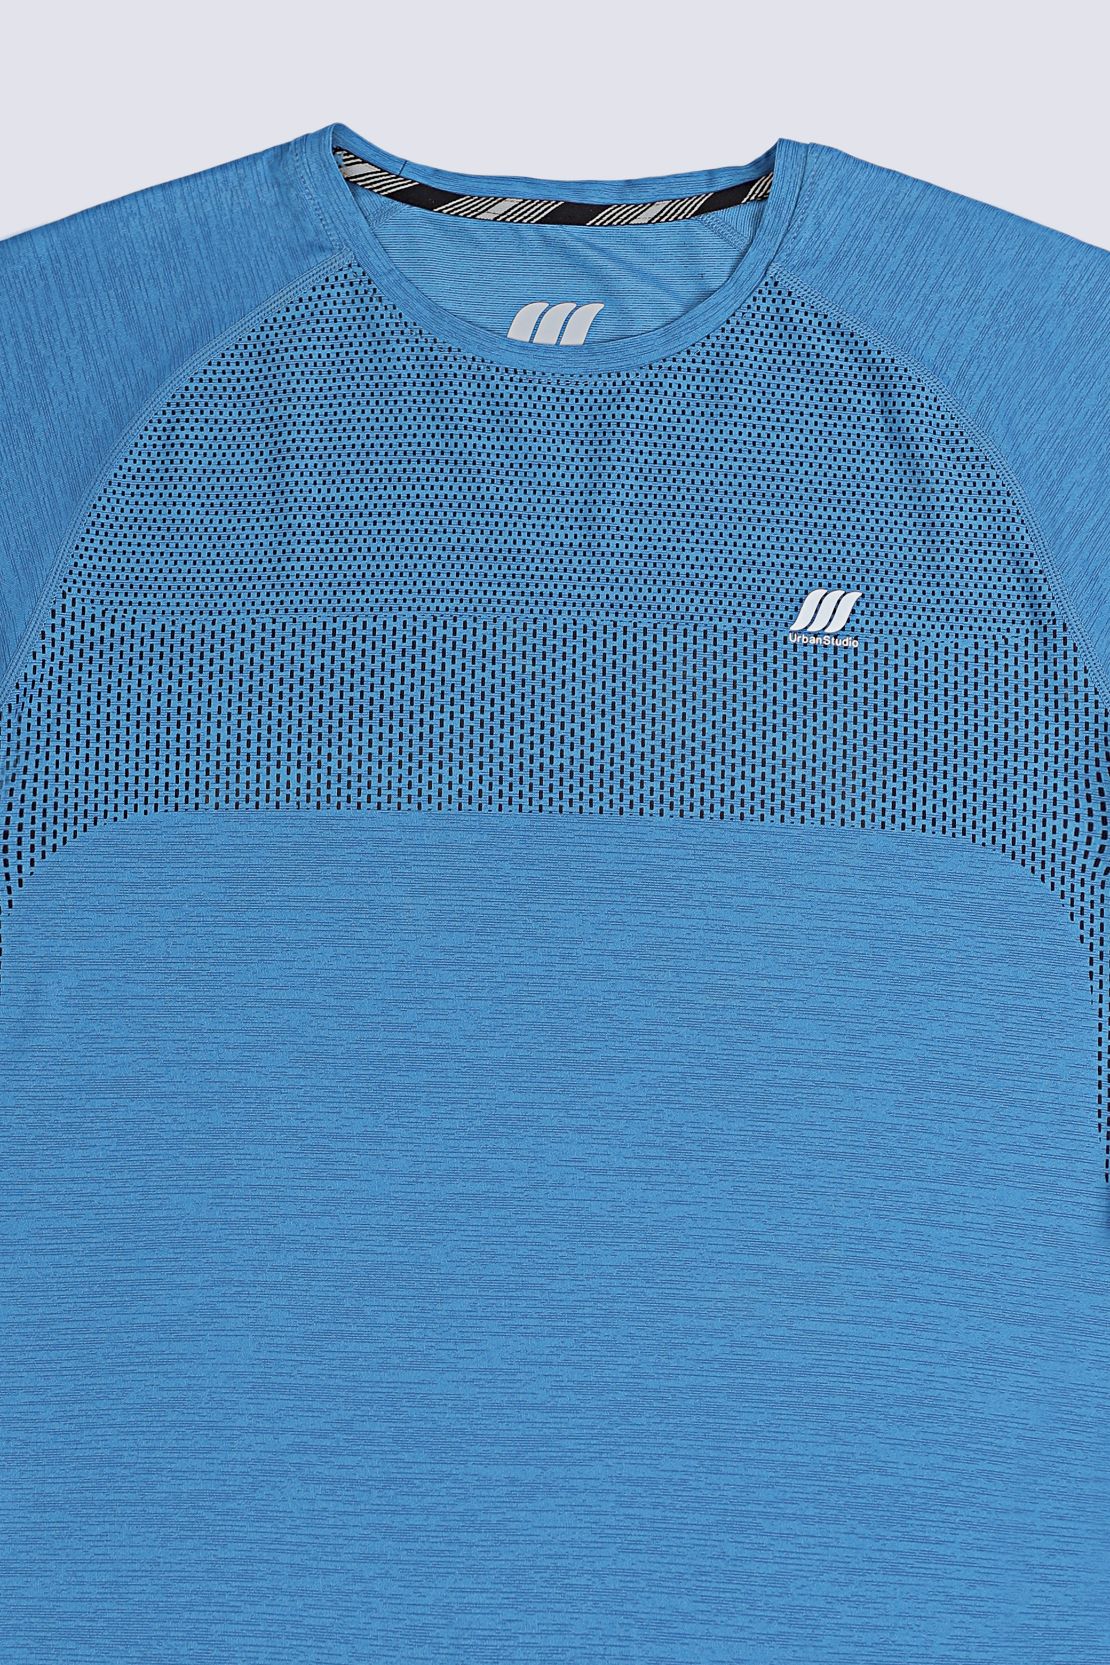 Blue Sport T Shirt